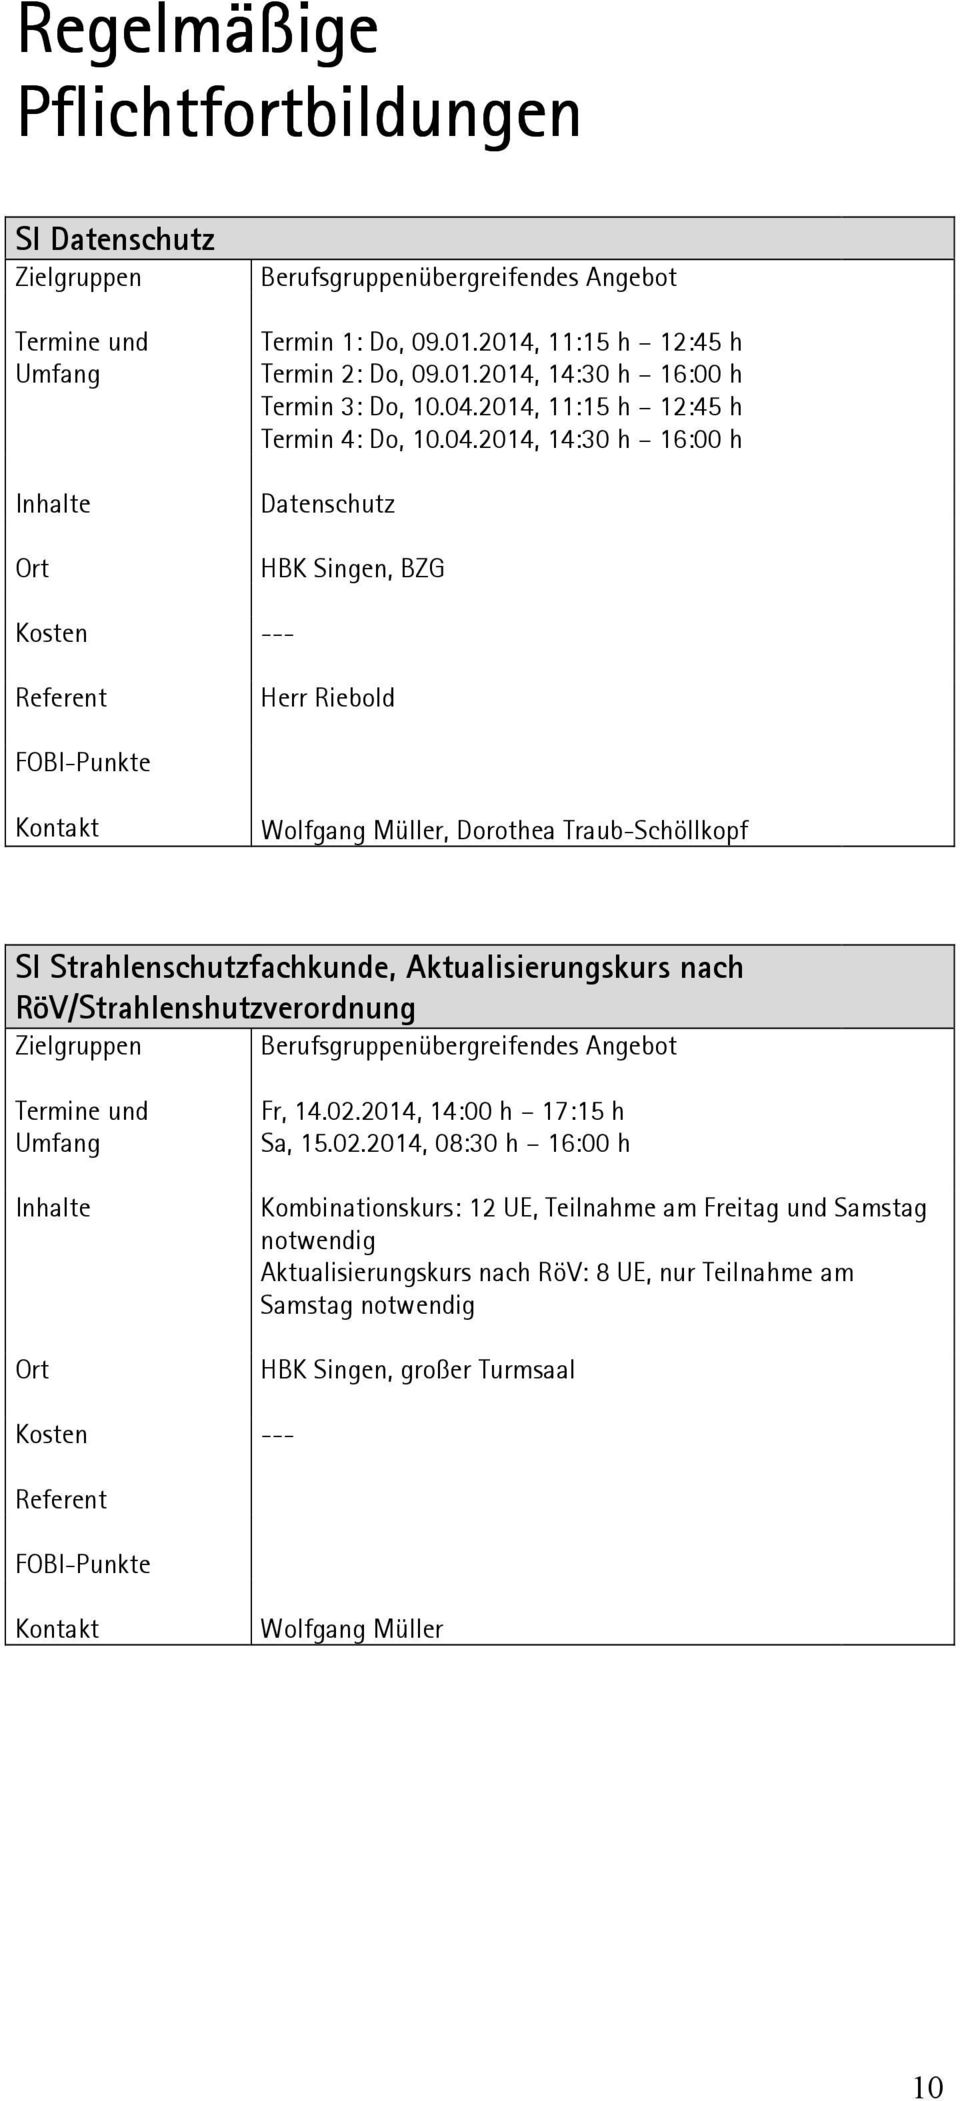 Aktualisierungskurs nach RöV/Strahlenshutzverordnung Zielgruppen Berufsgruppenübergreifendes Angebot Fr, 14.02.